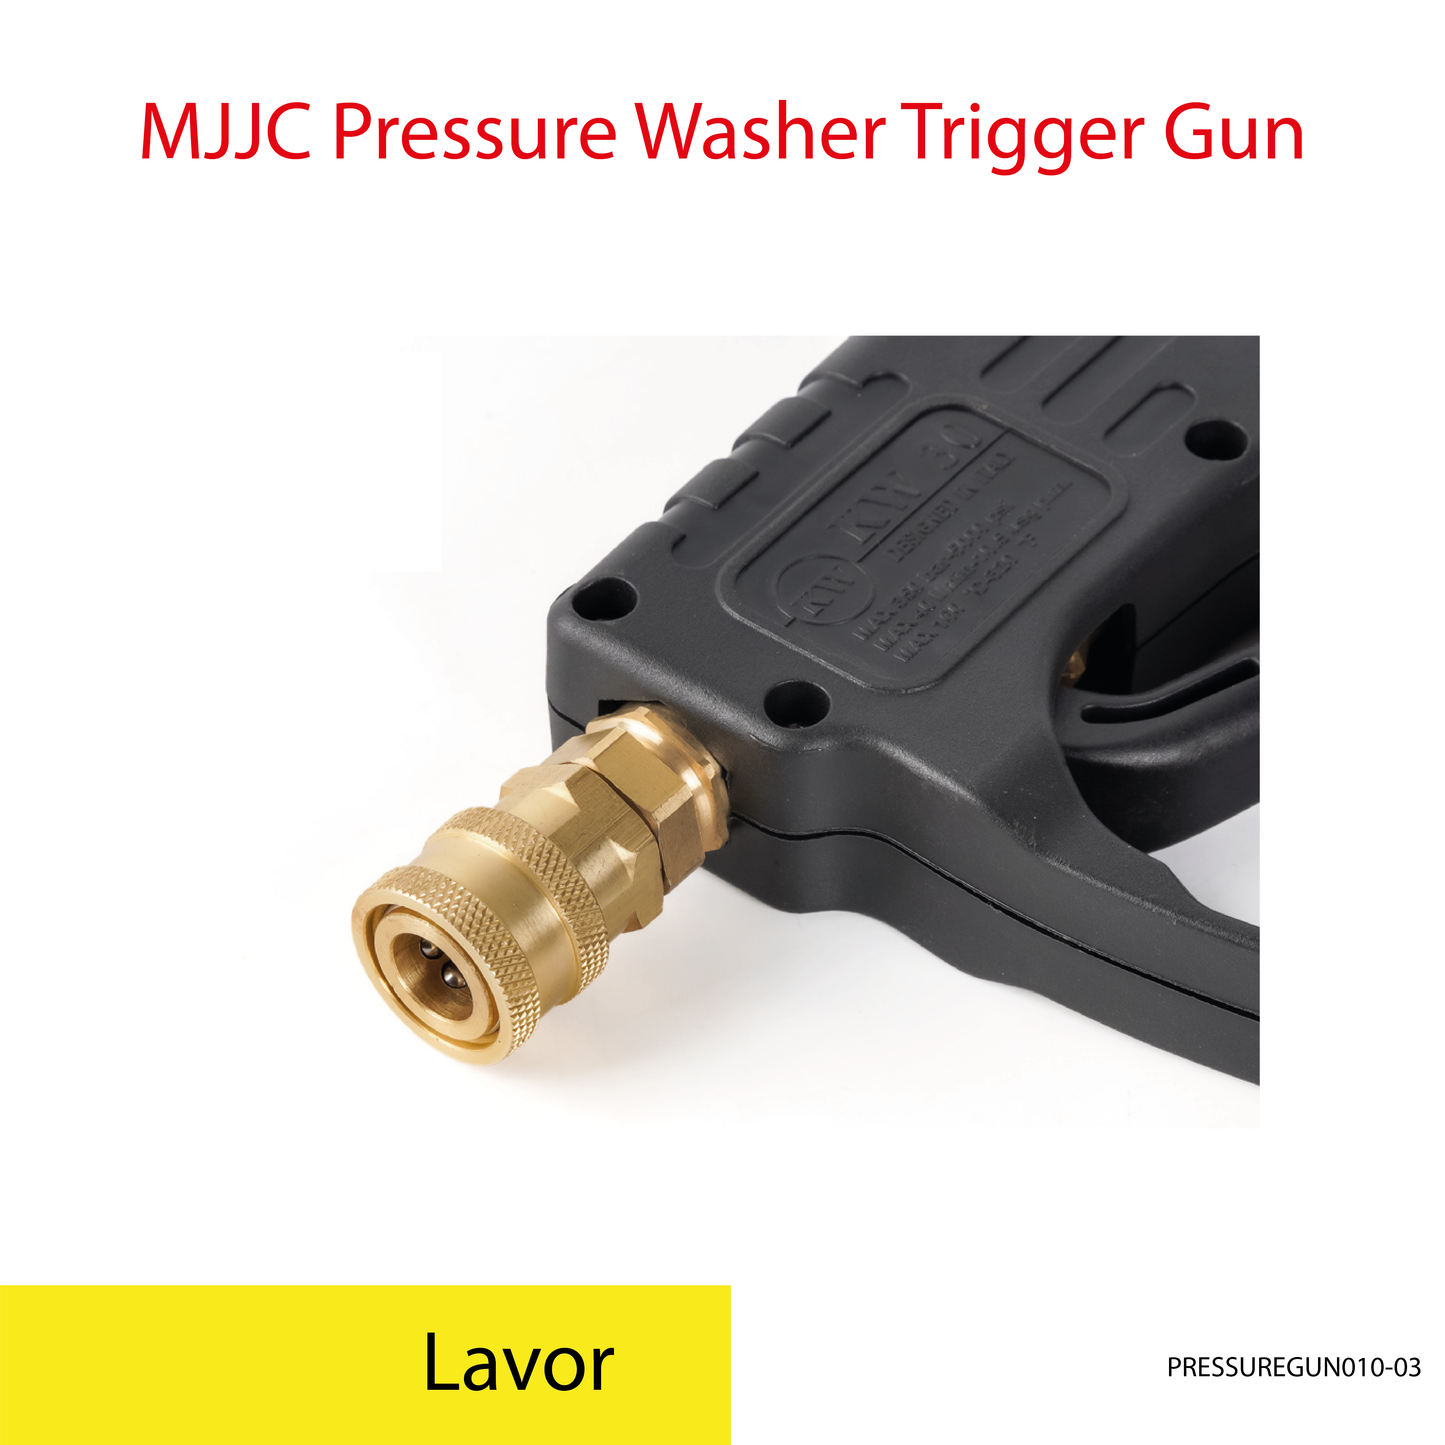 Lavor - MJJC Light Weight Pressure Washer Trigger Spray Gun with Live Swivel